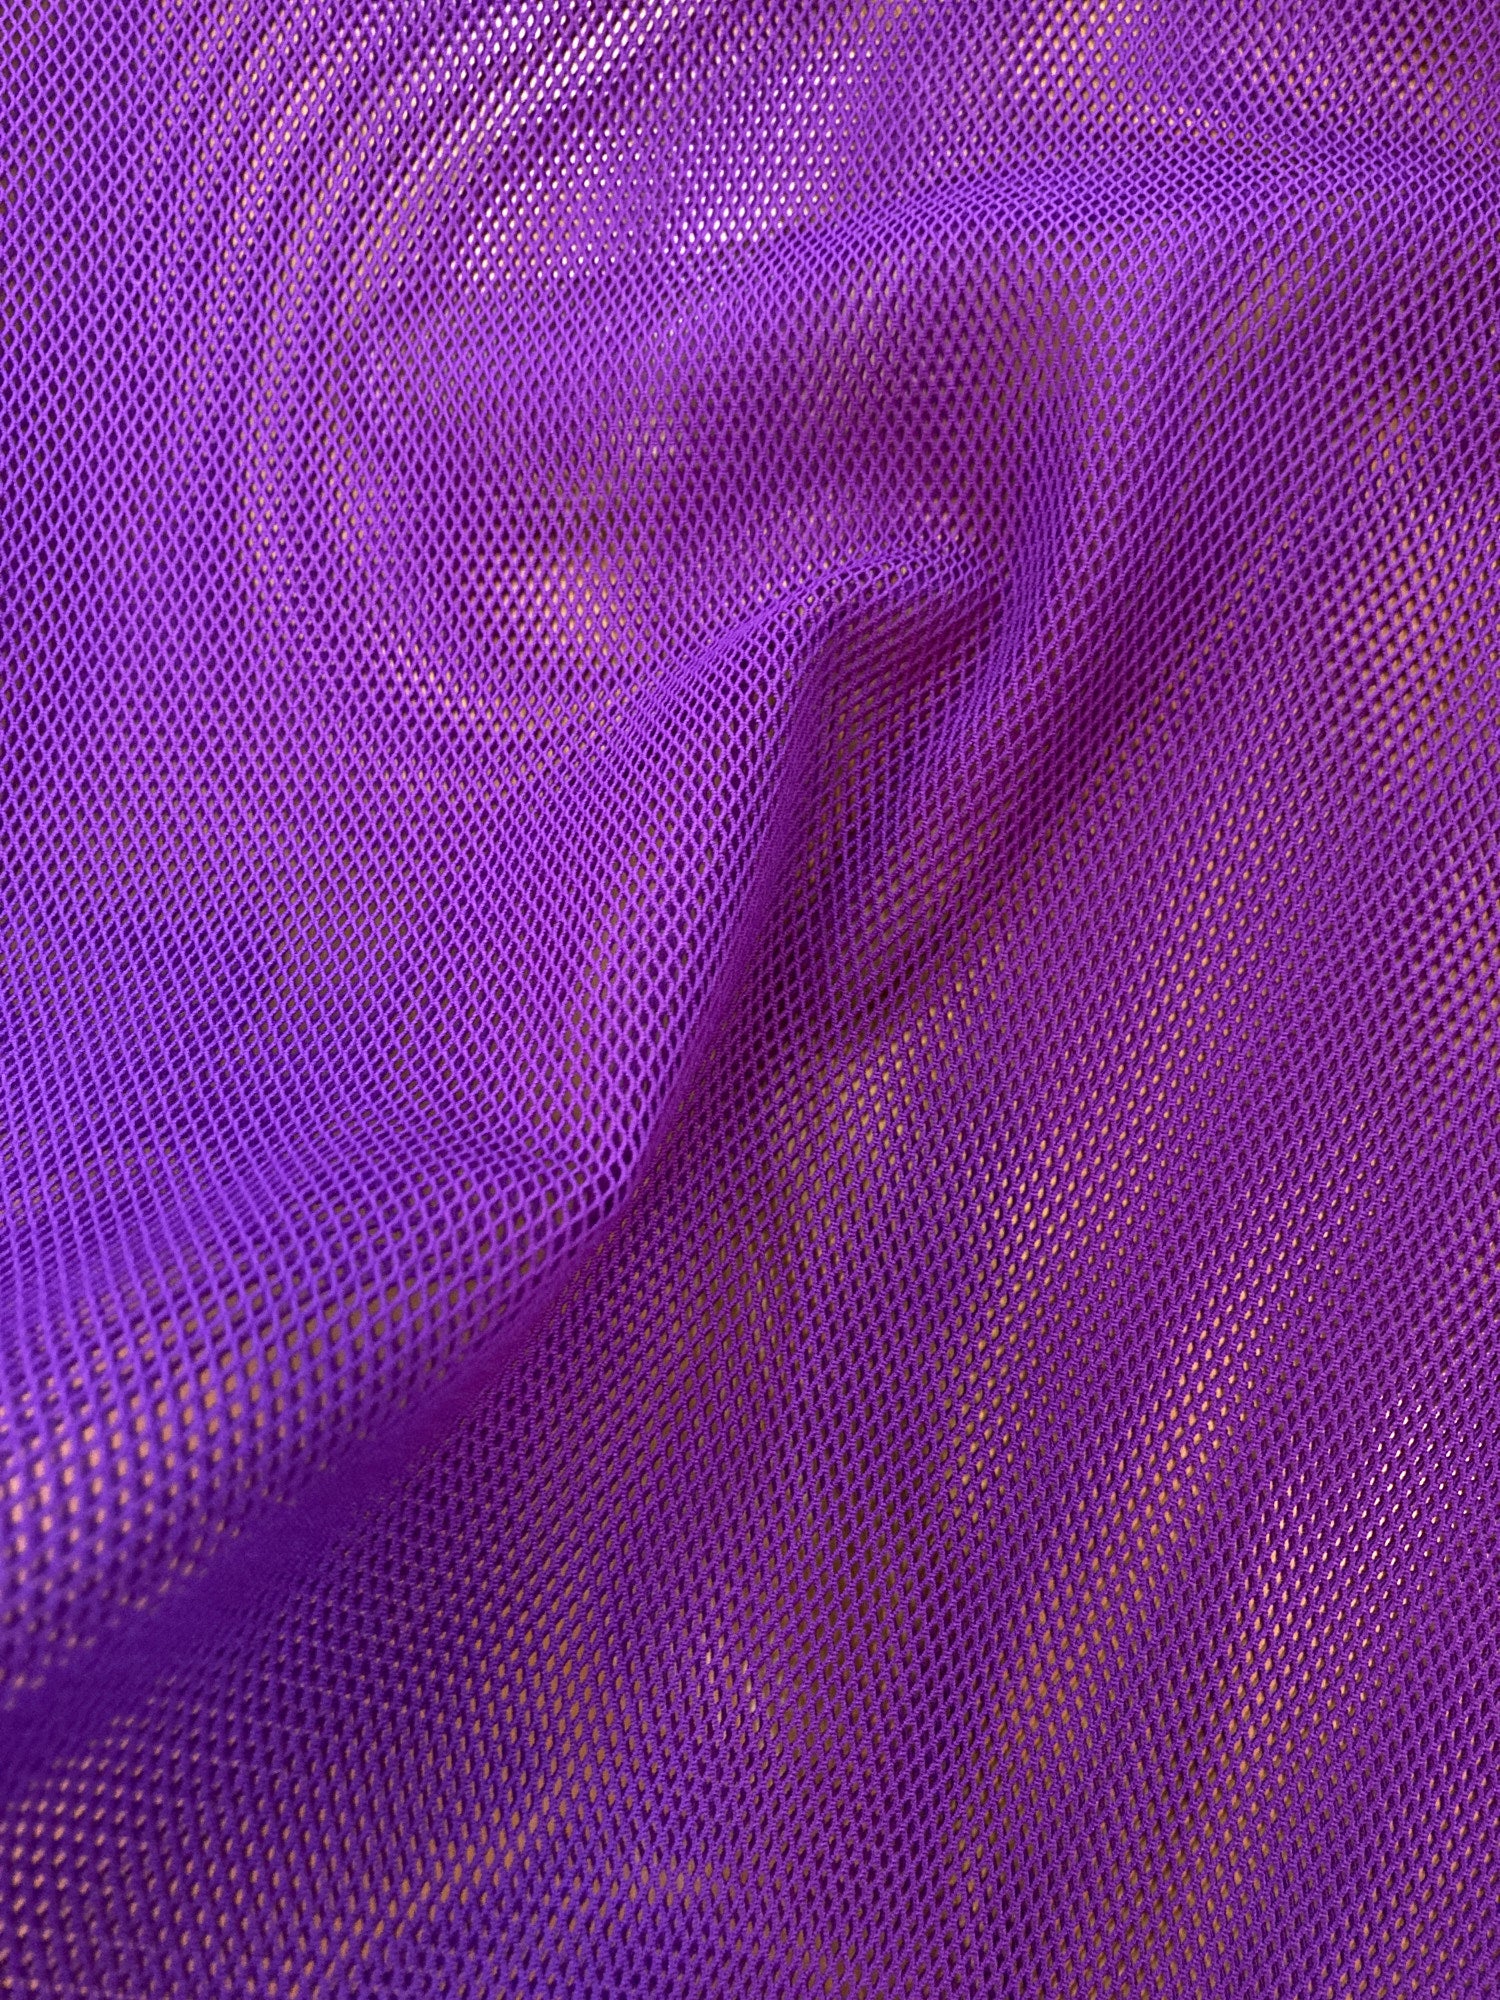 Issey Miyake Men sheer purple nylon mesh t-shirt - S M